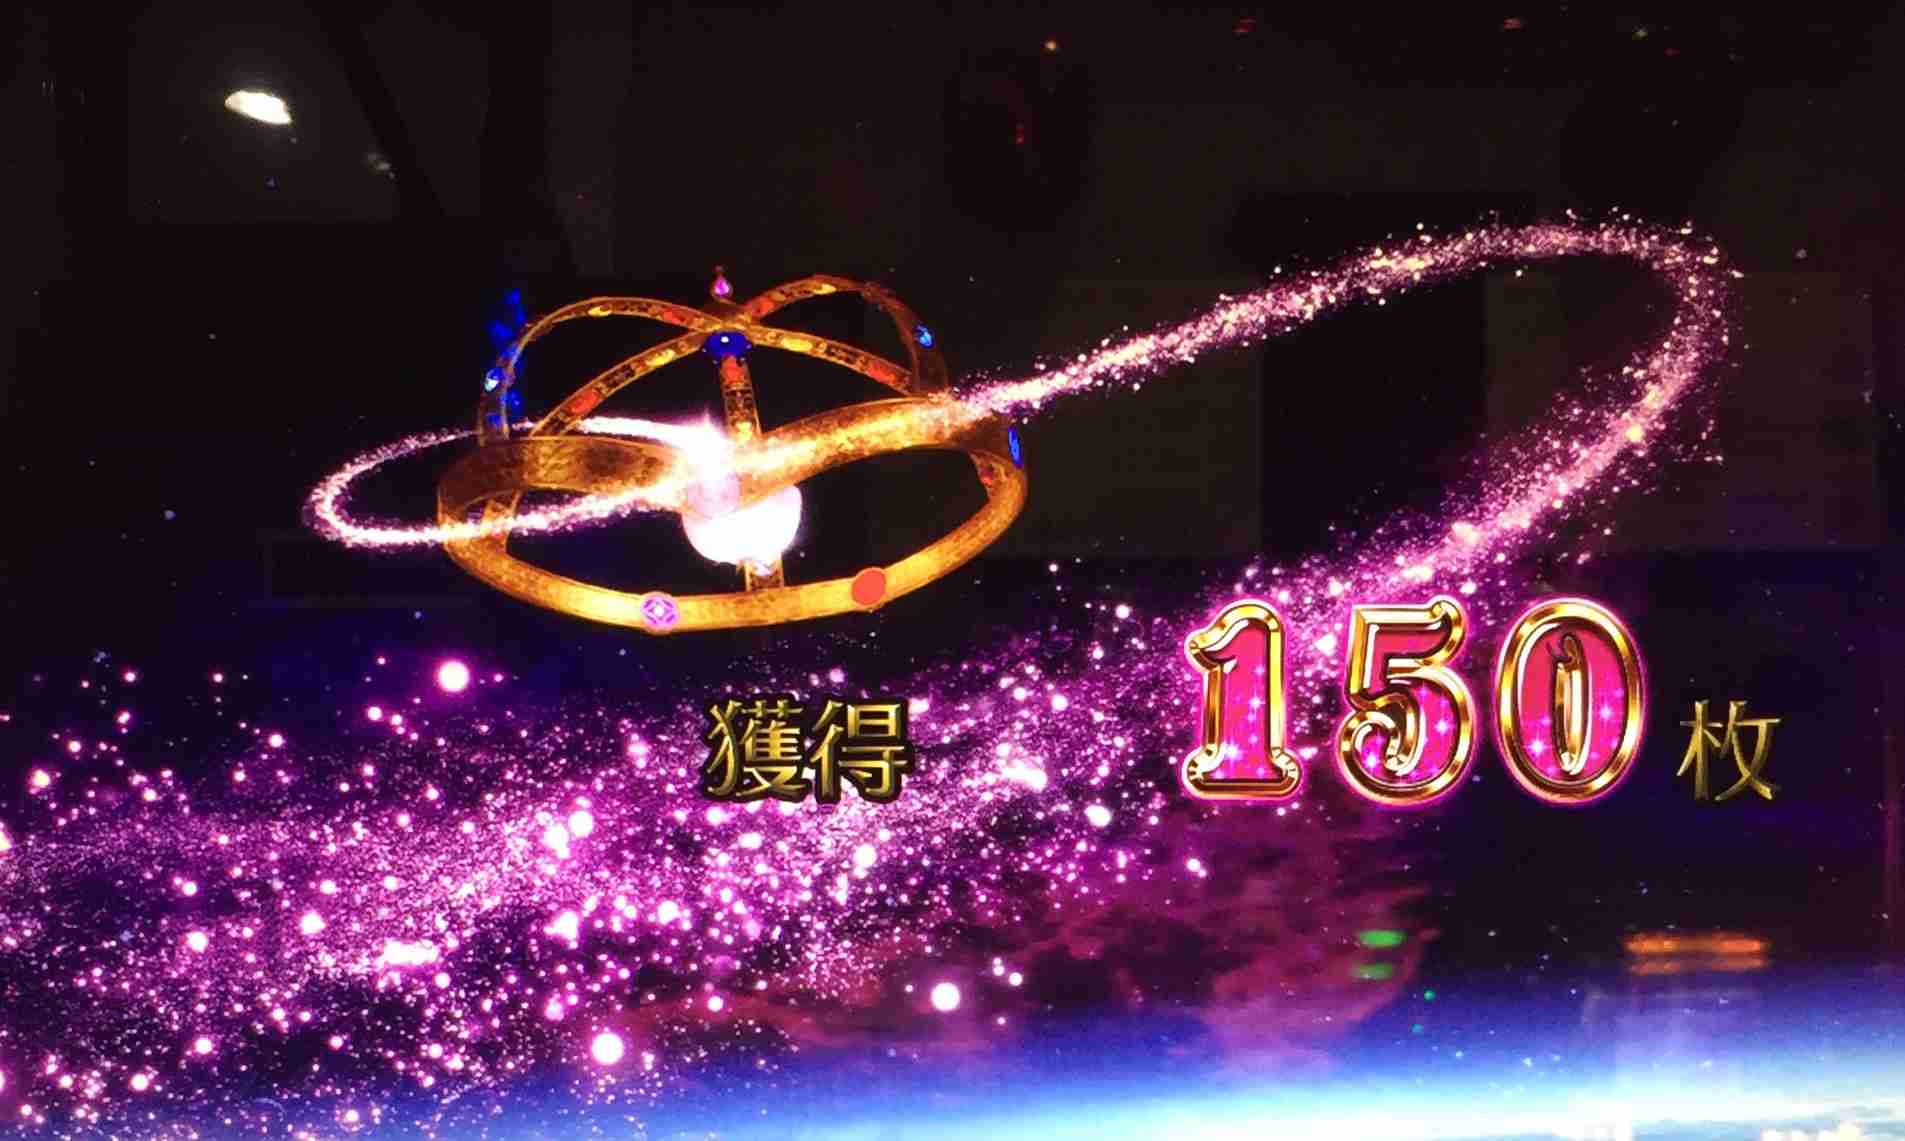 魔法少女まどかマギカ2の終了画面とキュゥべえのセリフの設定示唆 Kujiraのパチスロ道